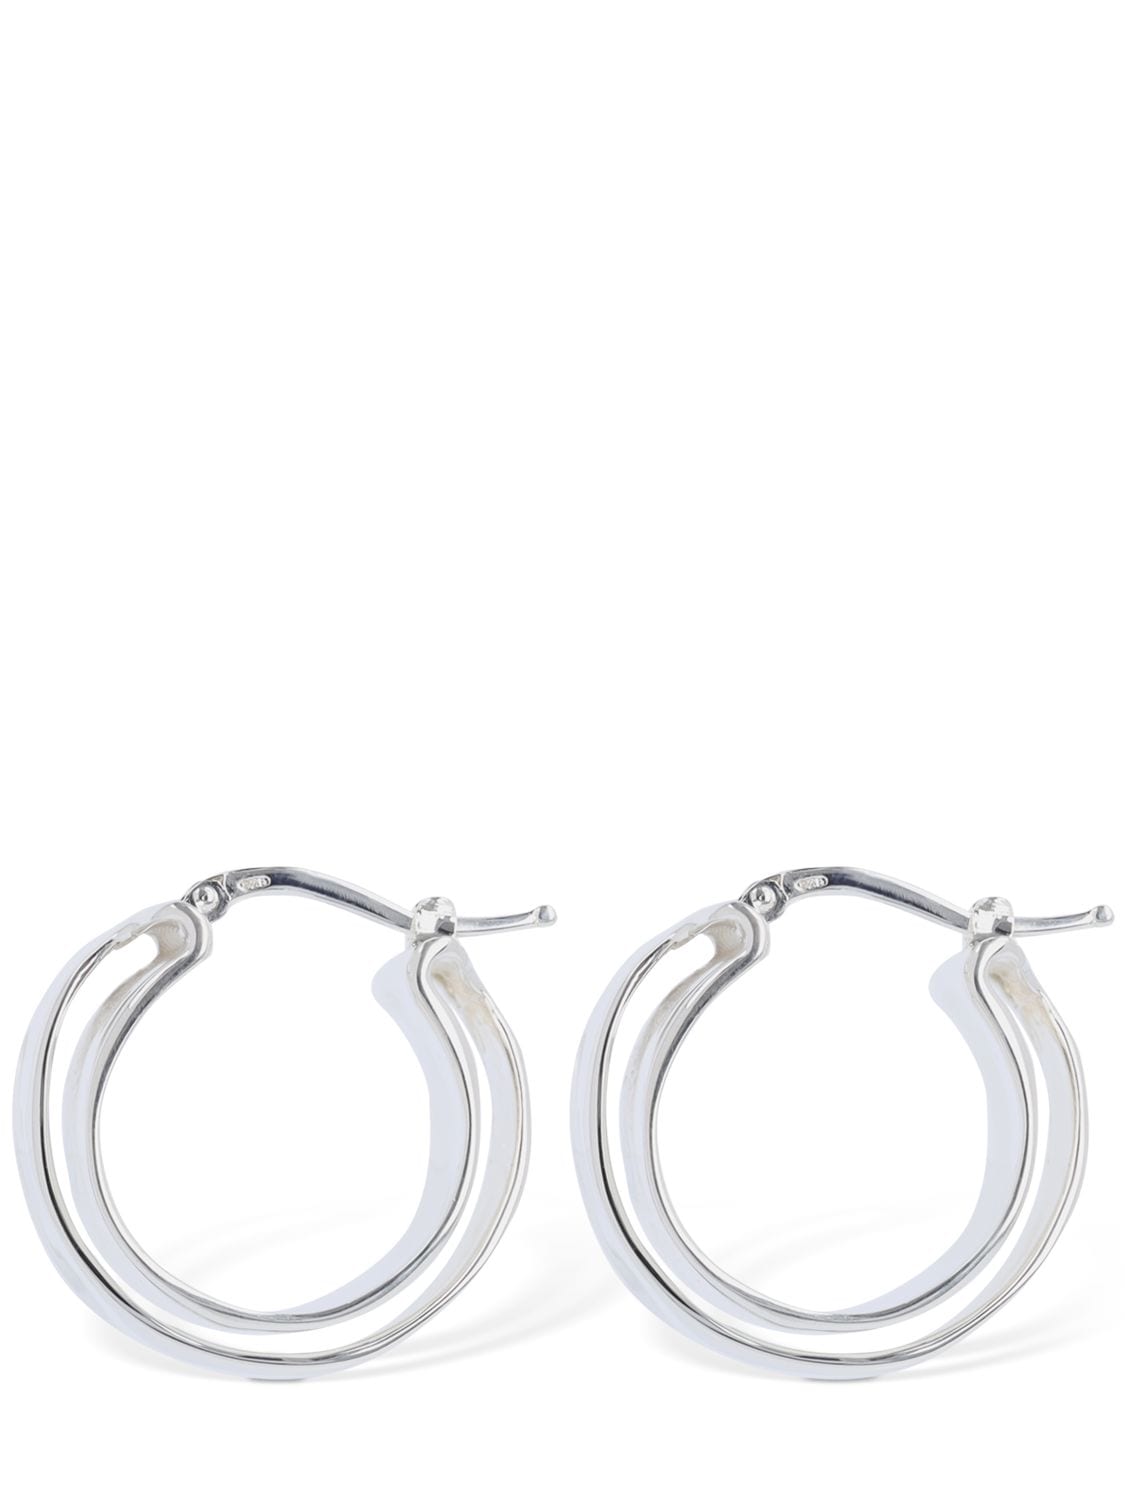 Image of Levels 5 Medium Hoop Earrings